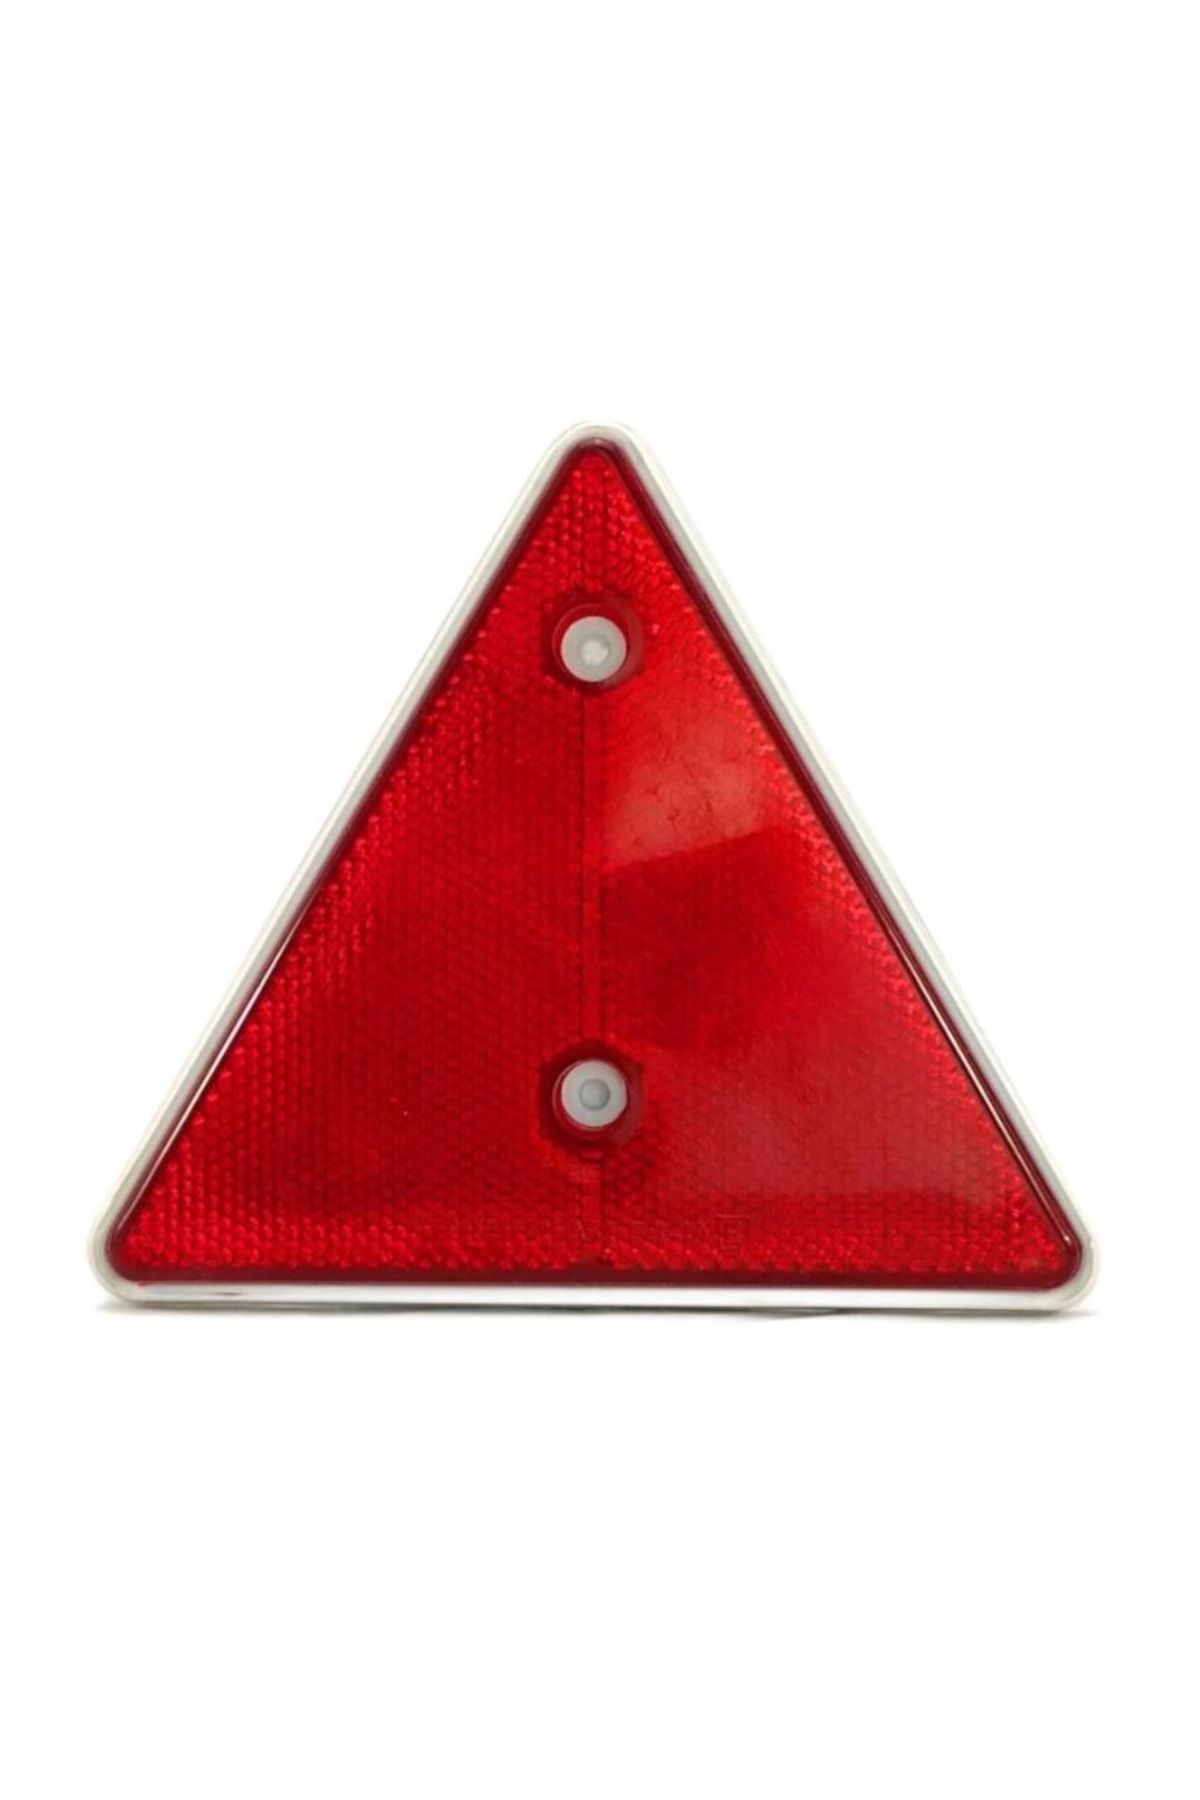 ERAS Üçgen Reflektör Kırmızı 15x14cm Universal